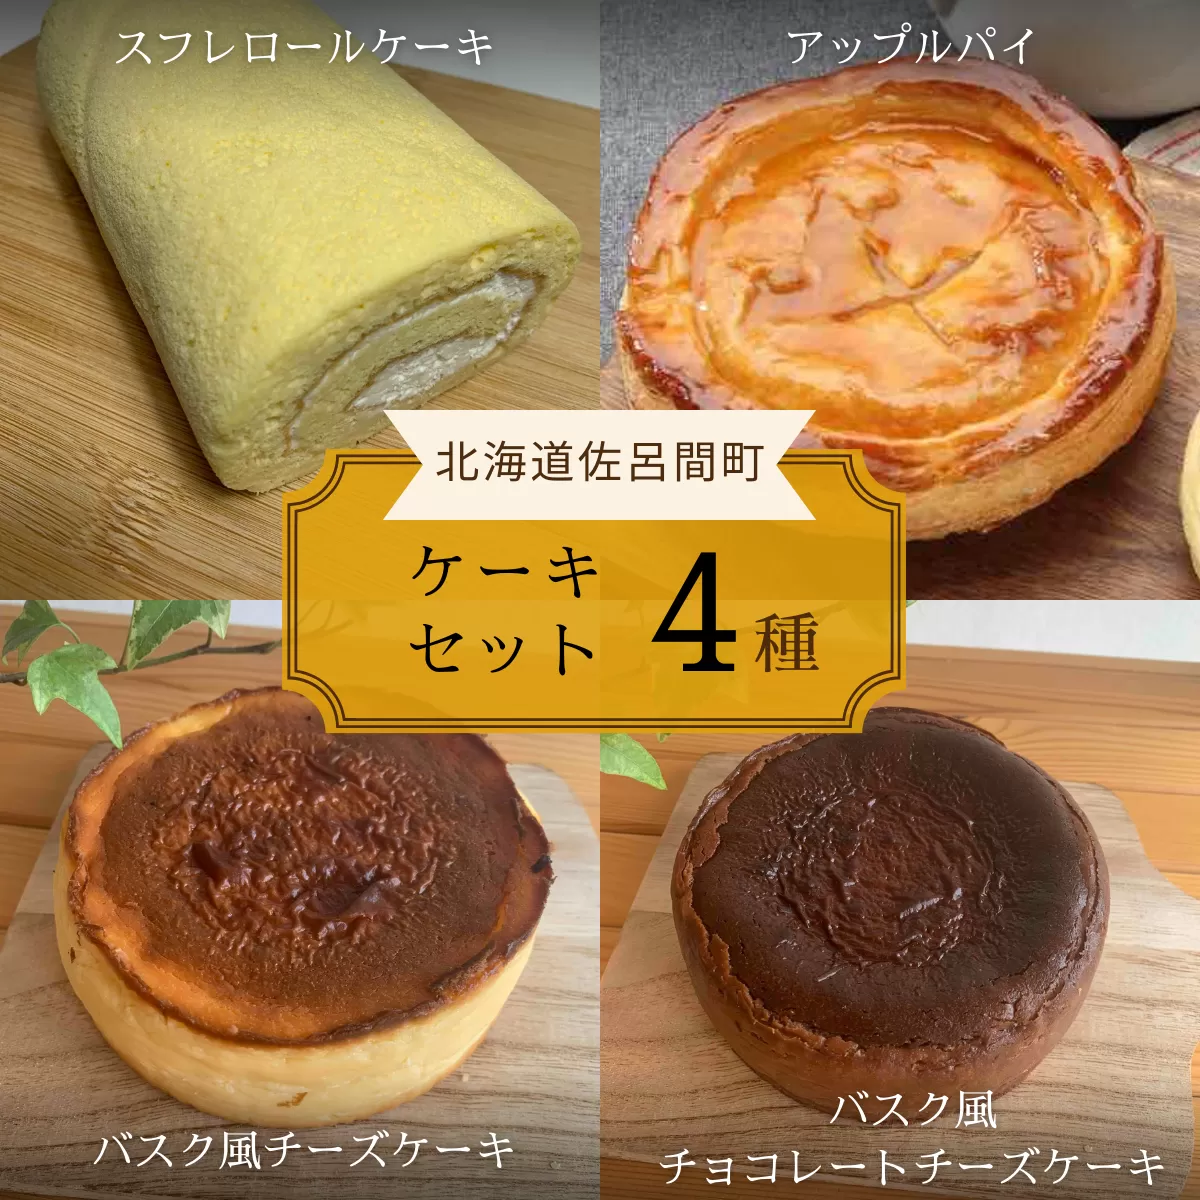 4種のケーキセット（スフレロールケーキ・アップルパイ・バスク風チーズケーキ・バスク風チョコレートチーズケーキ） SRMJ104